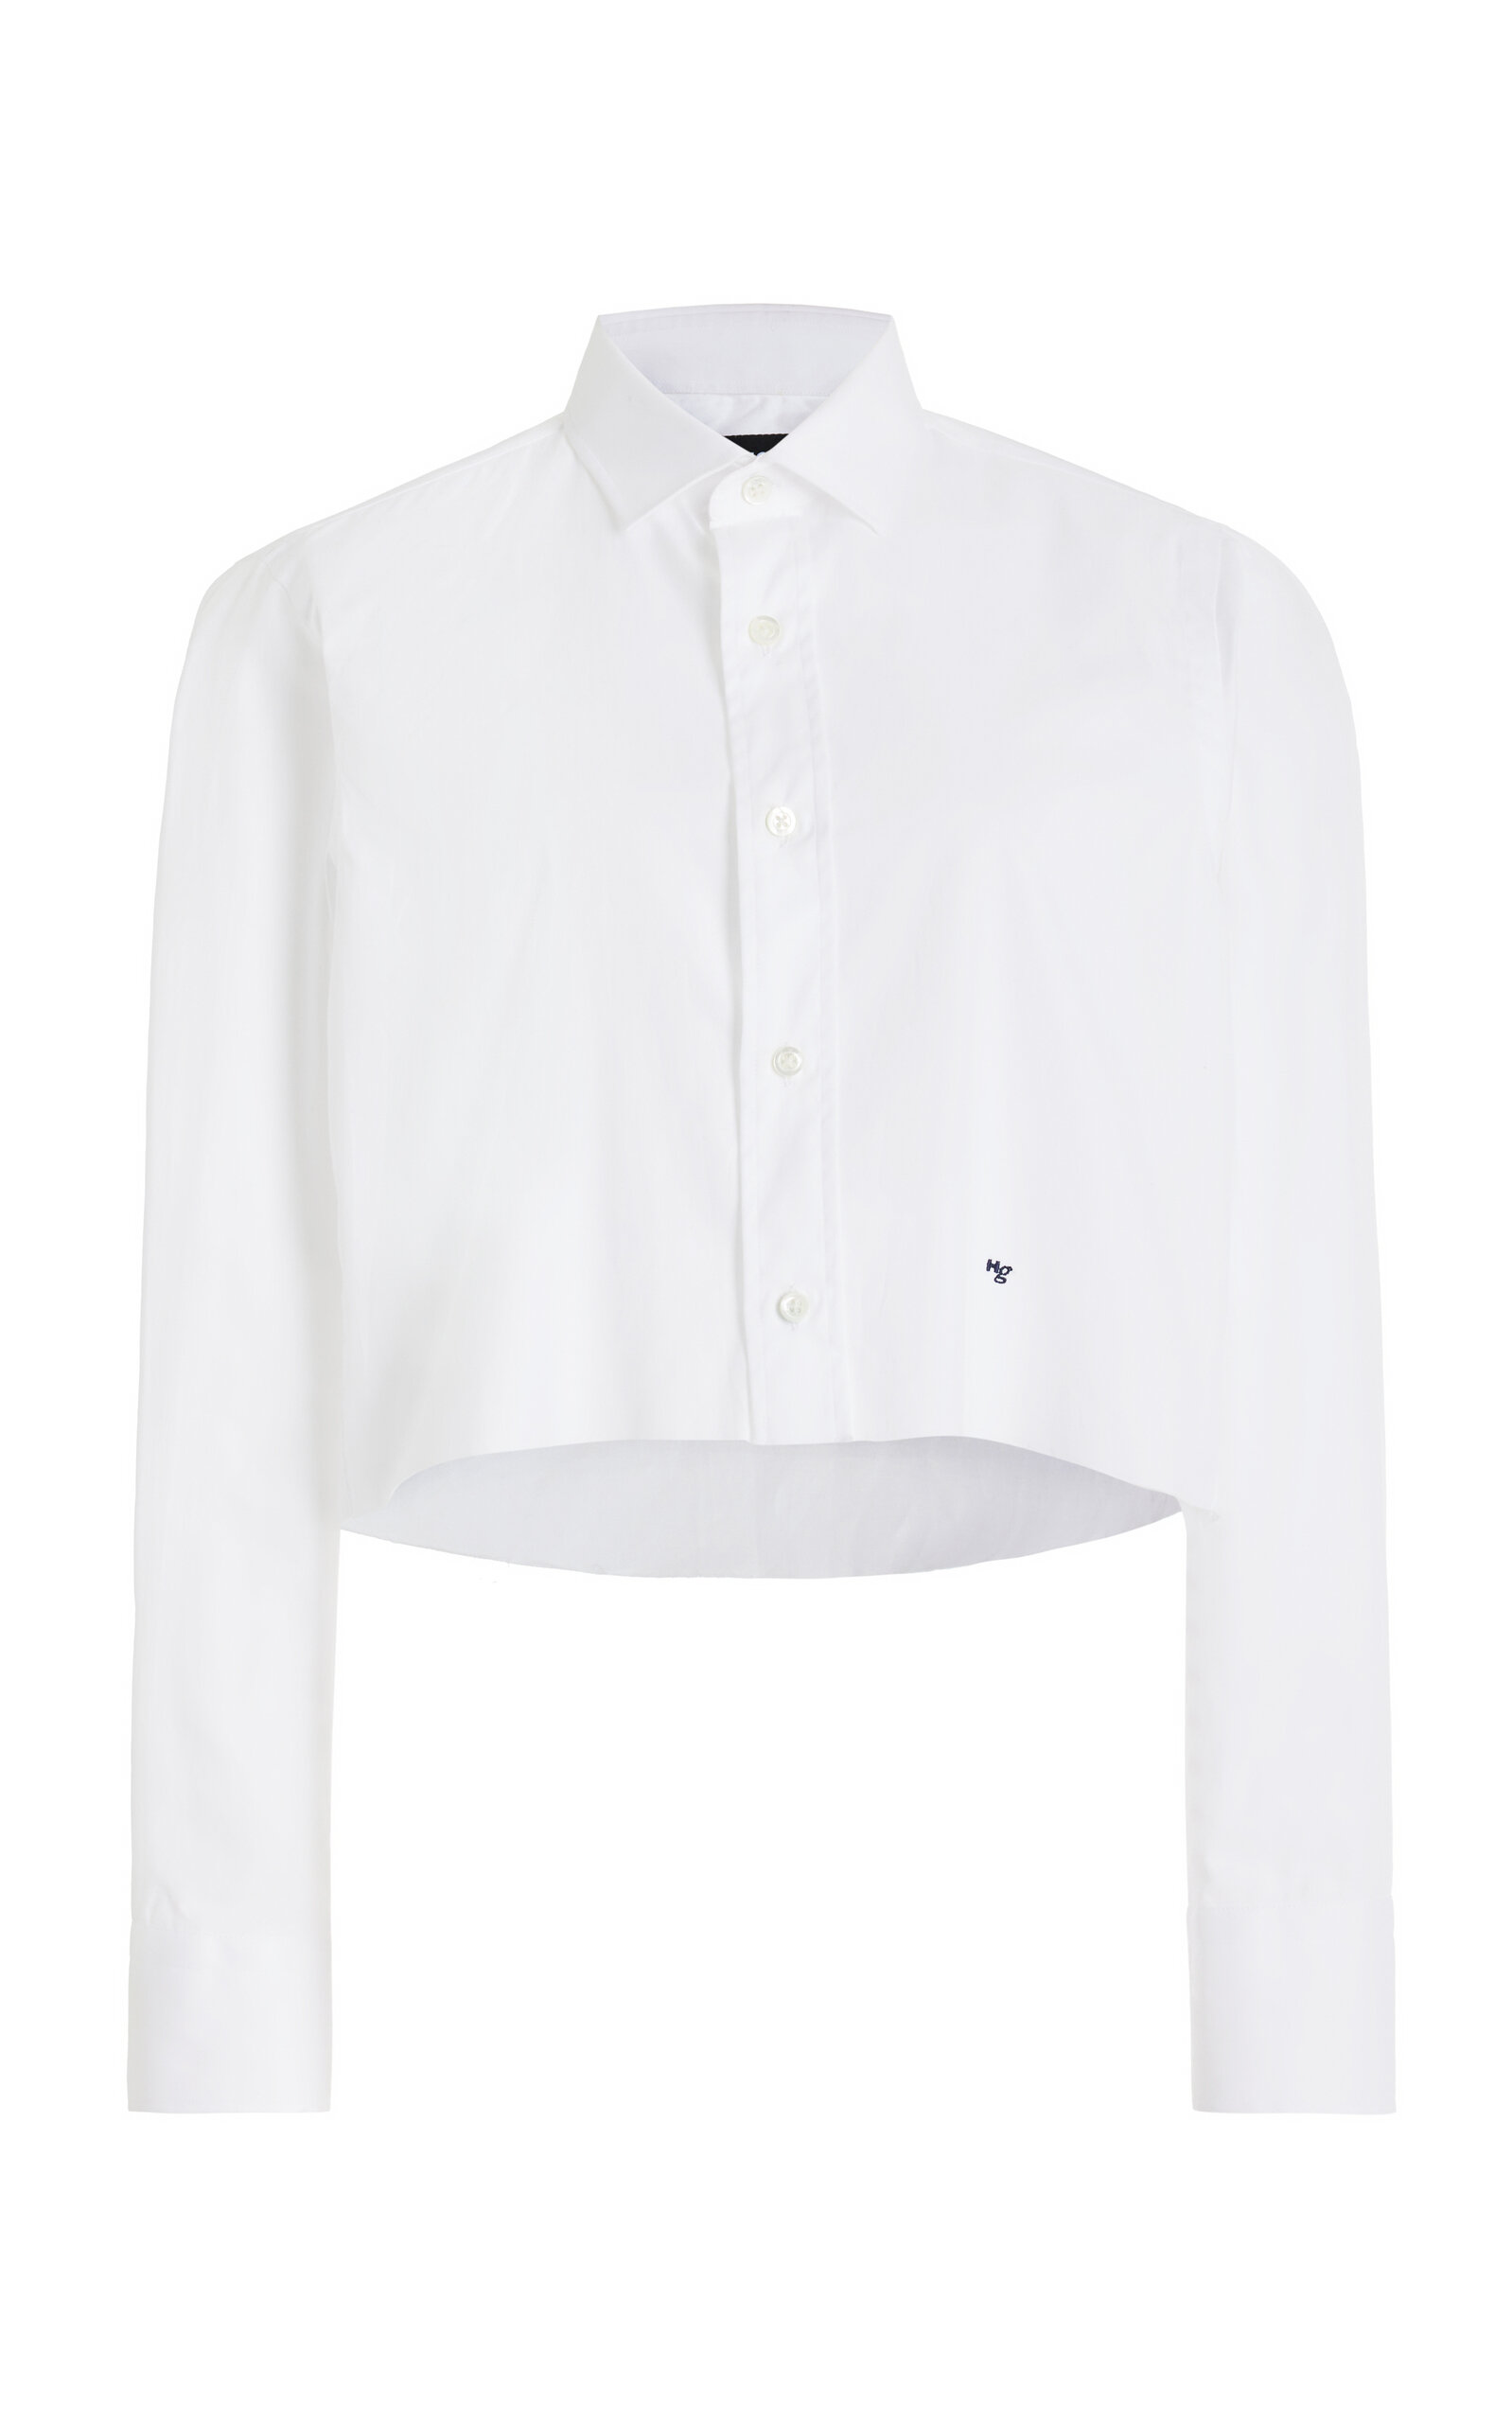 Hommegirls Cropped Cotton Shirt In White